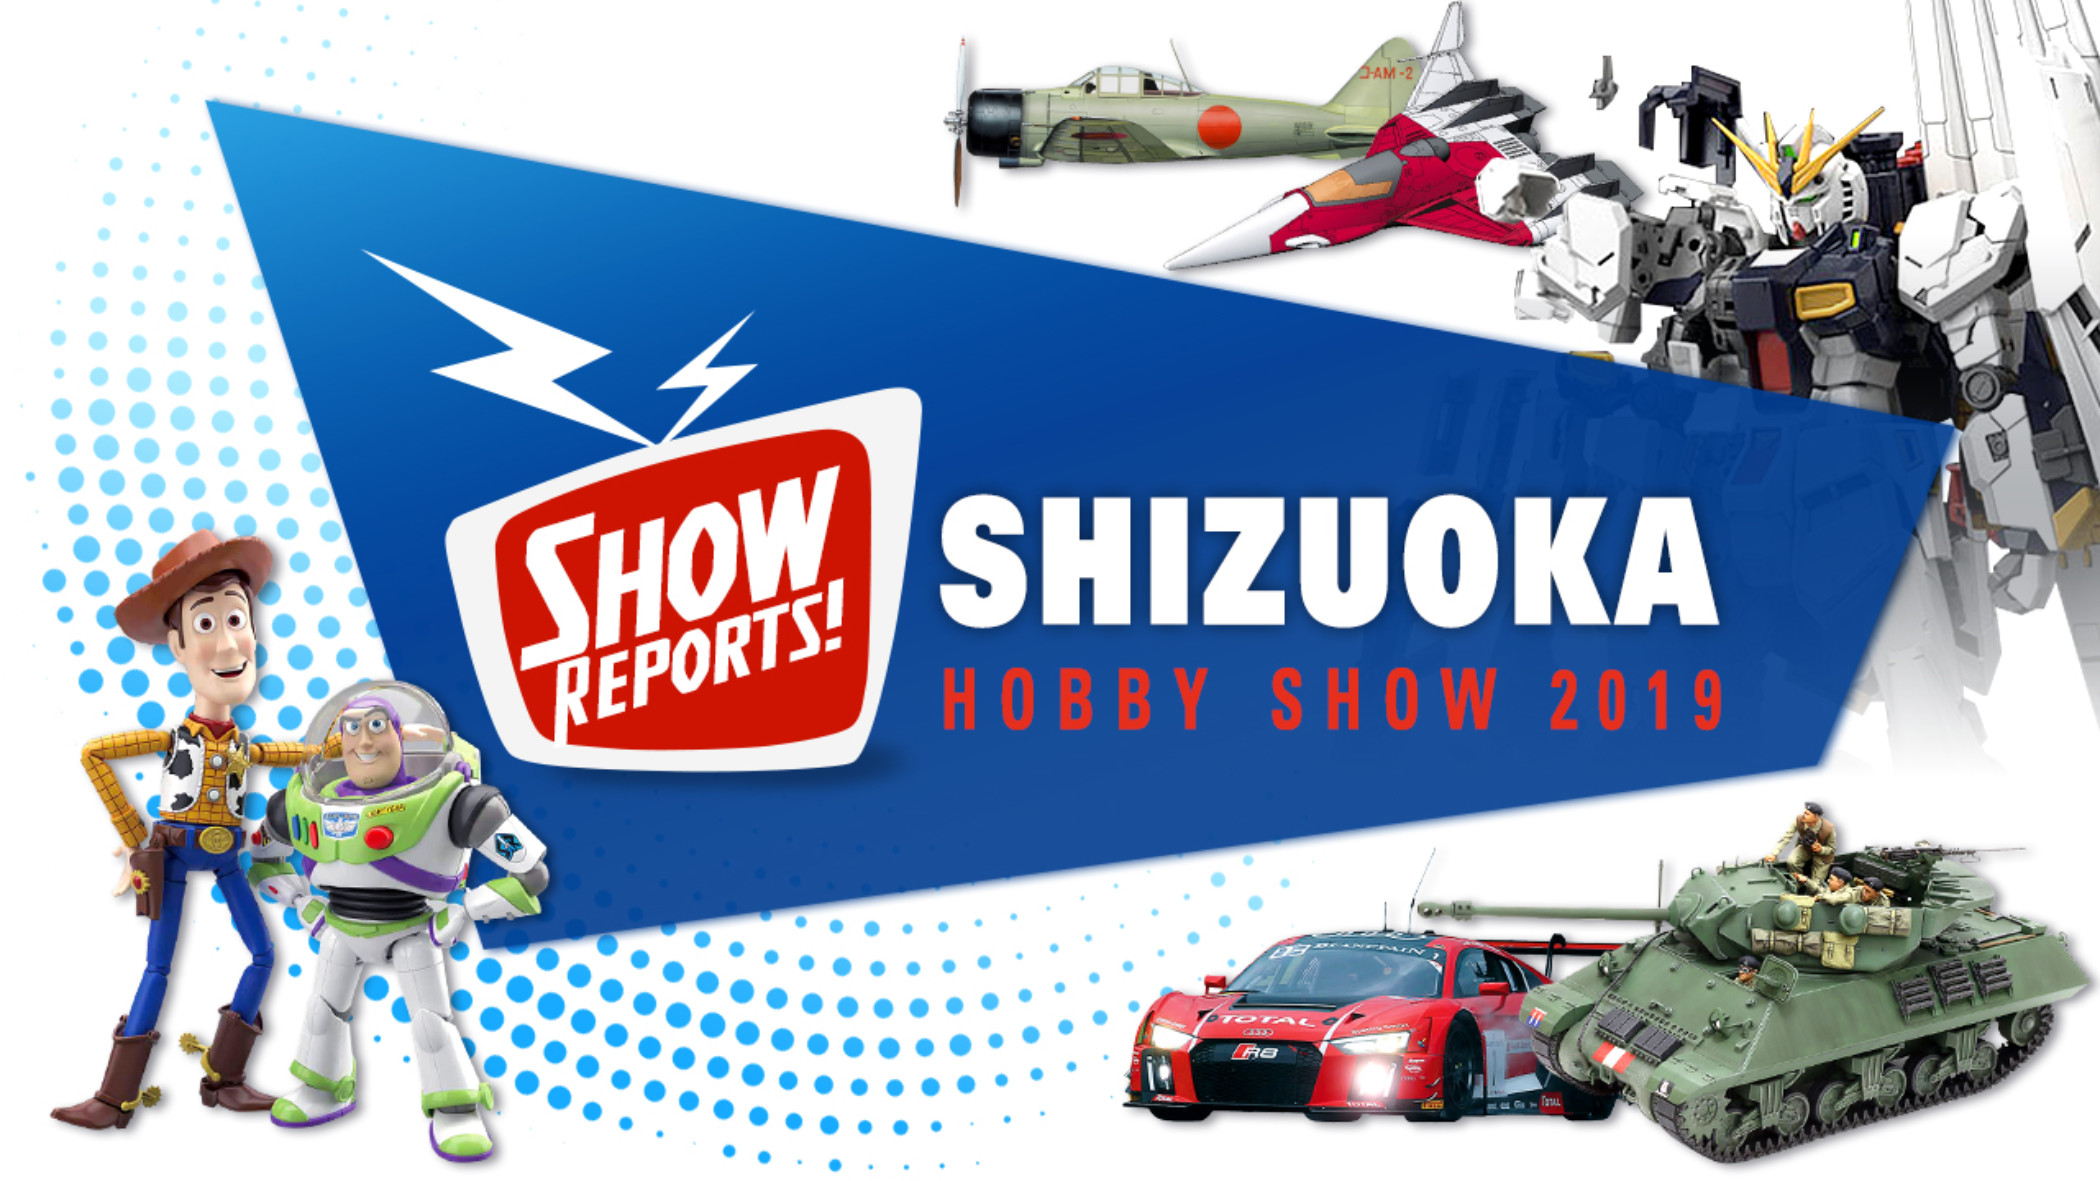 Shizuoka Hobby Show Reports hobbylink.tv